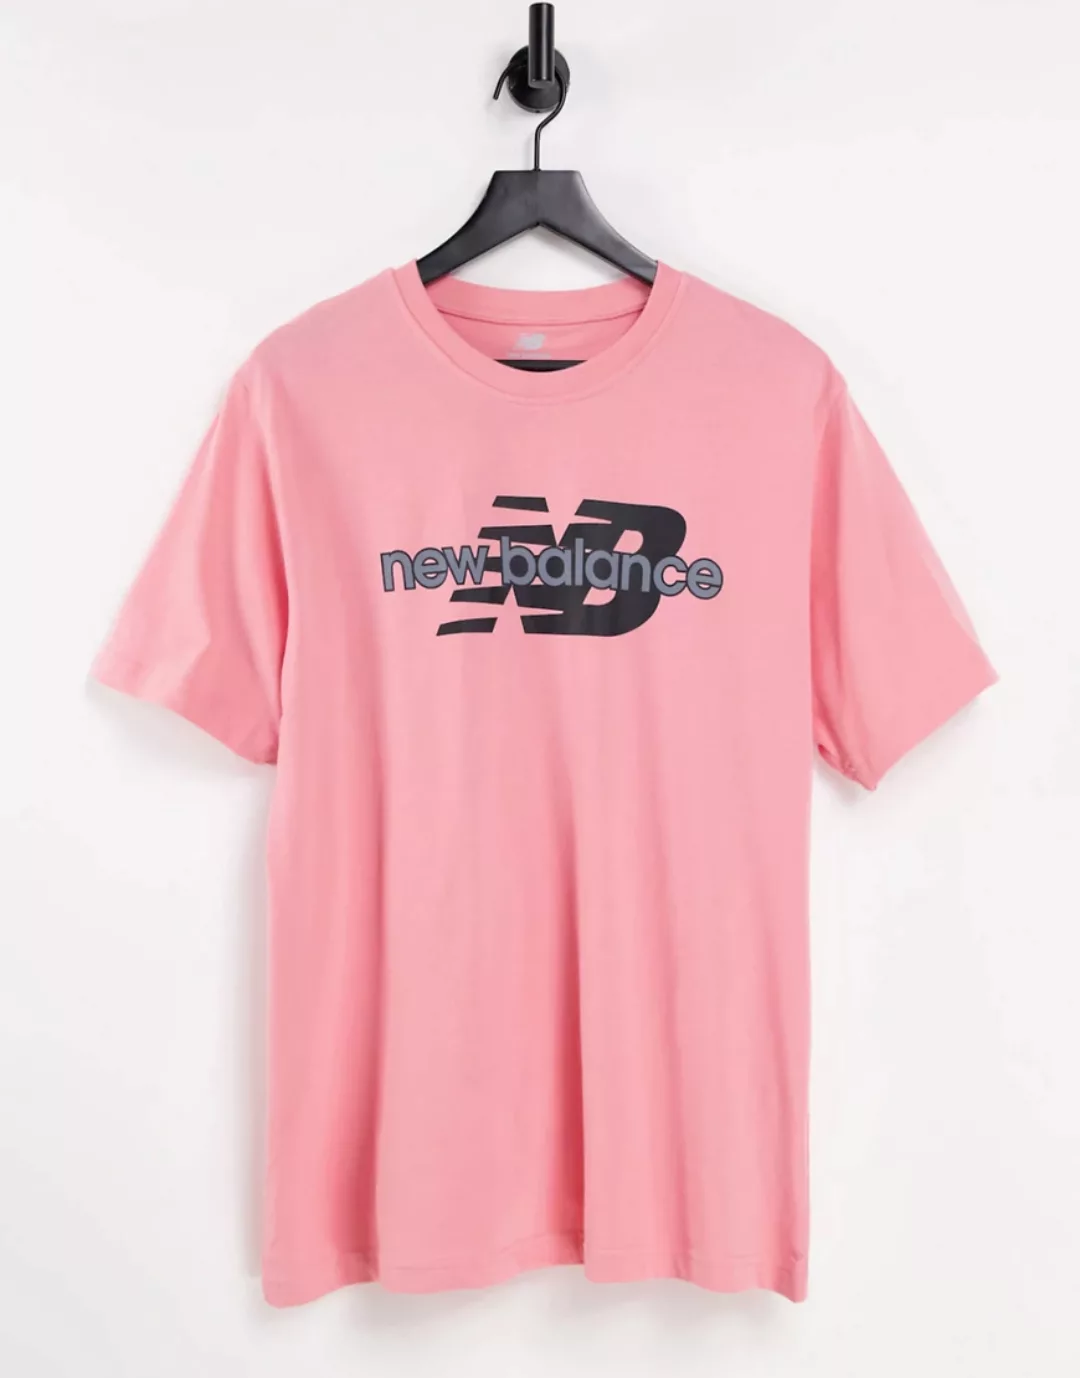 New Balance – T-Shirt in Rosa und Grün mit großem Logo, exklusiv bei ASOS günstig online kaufen